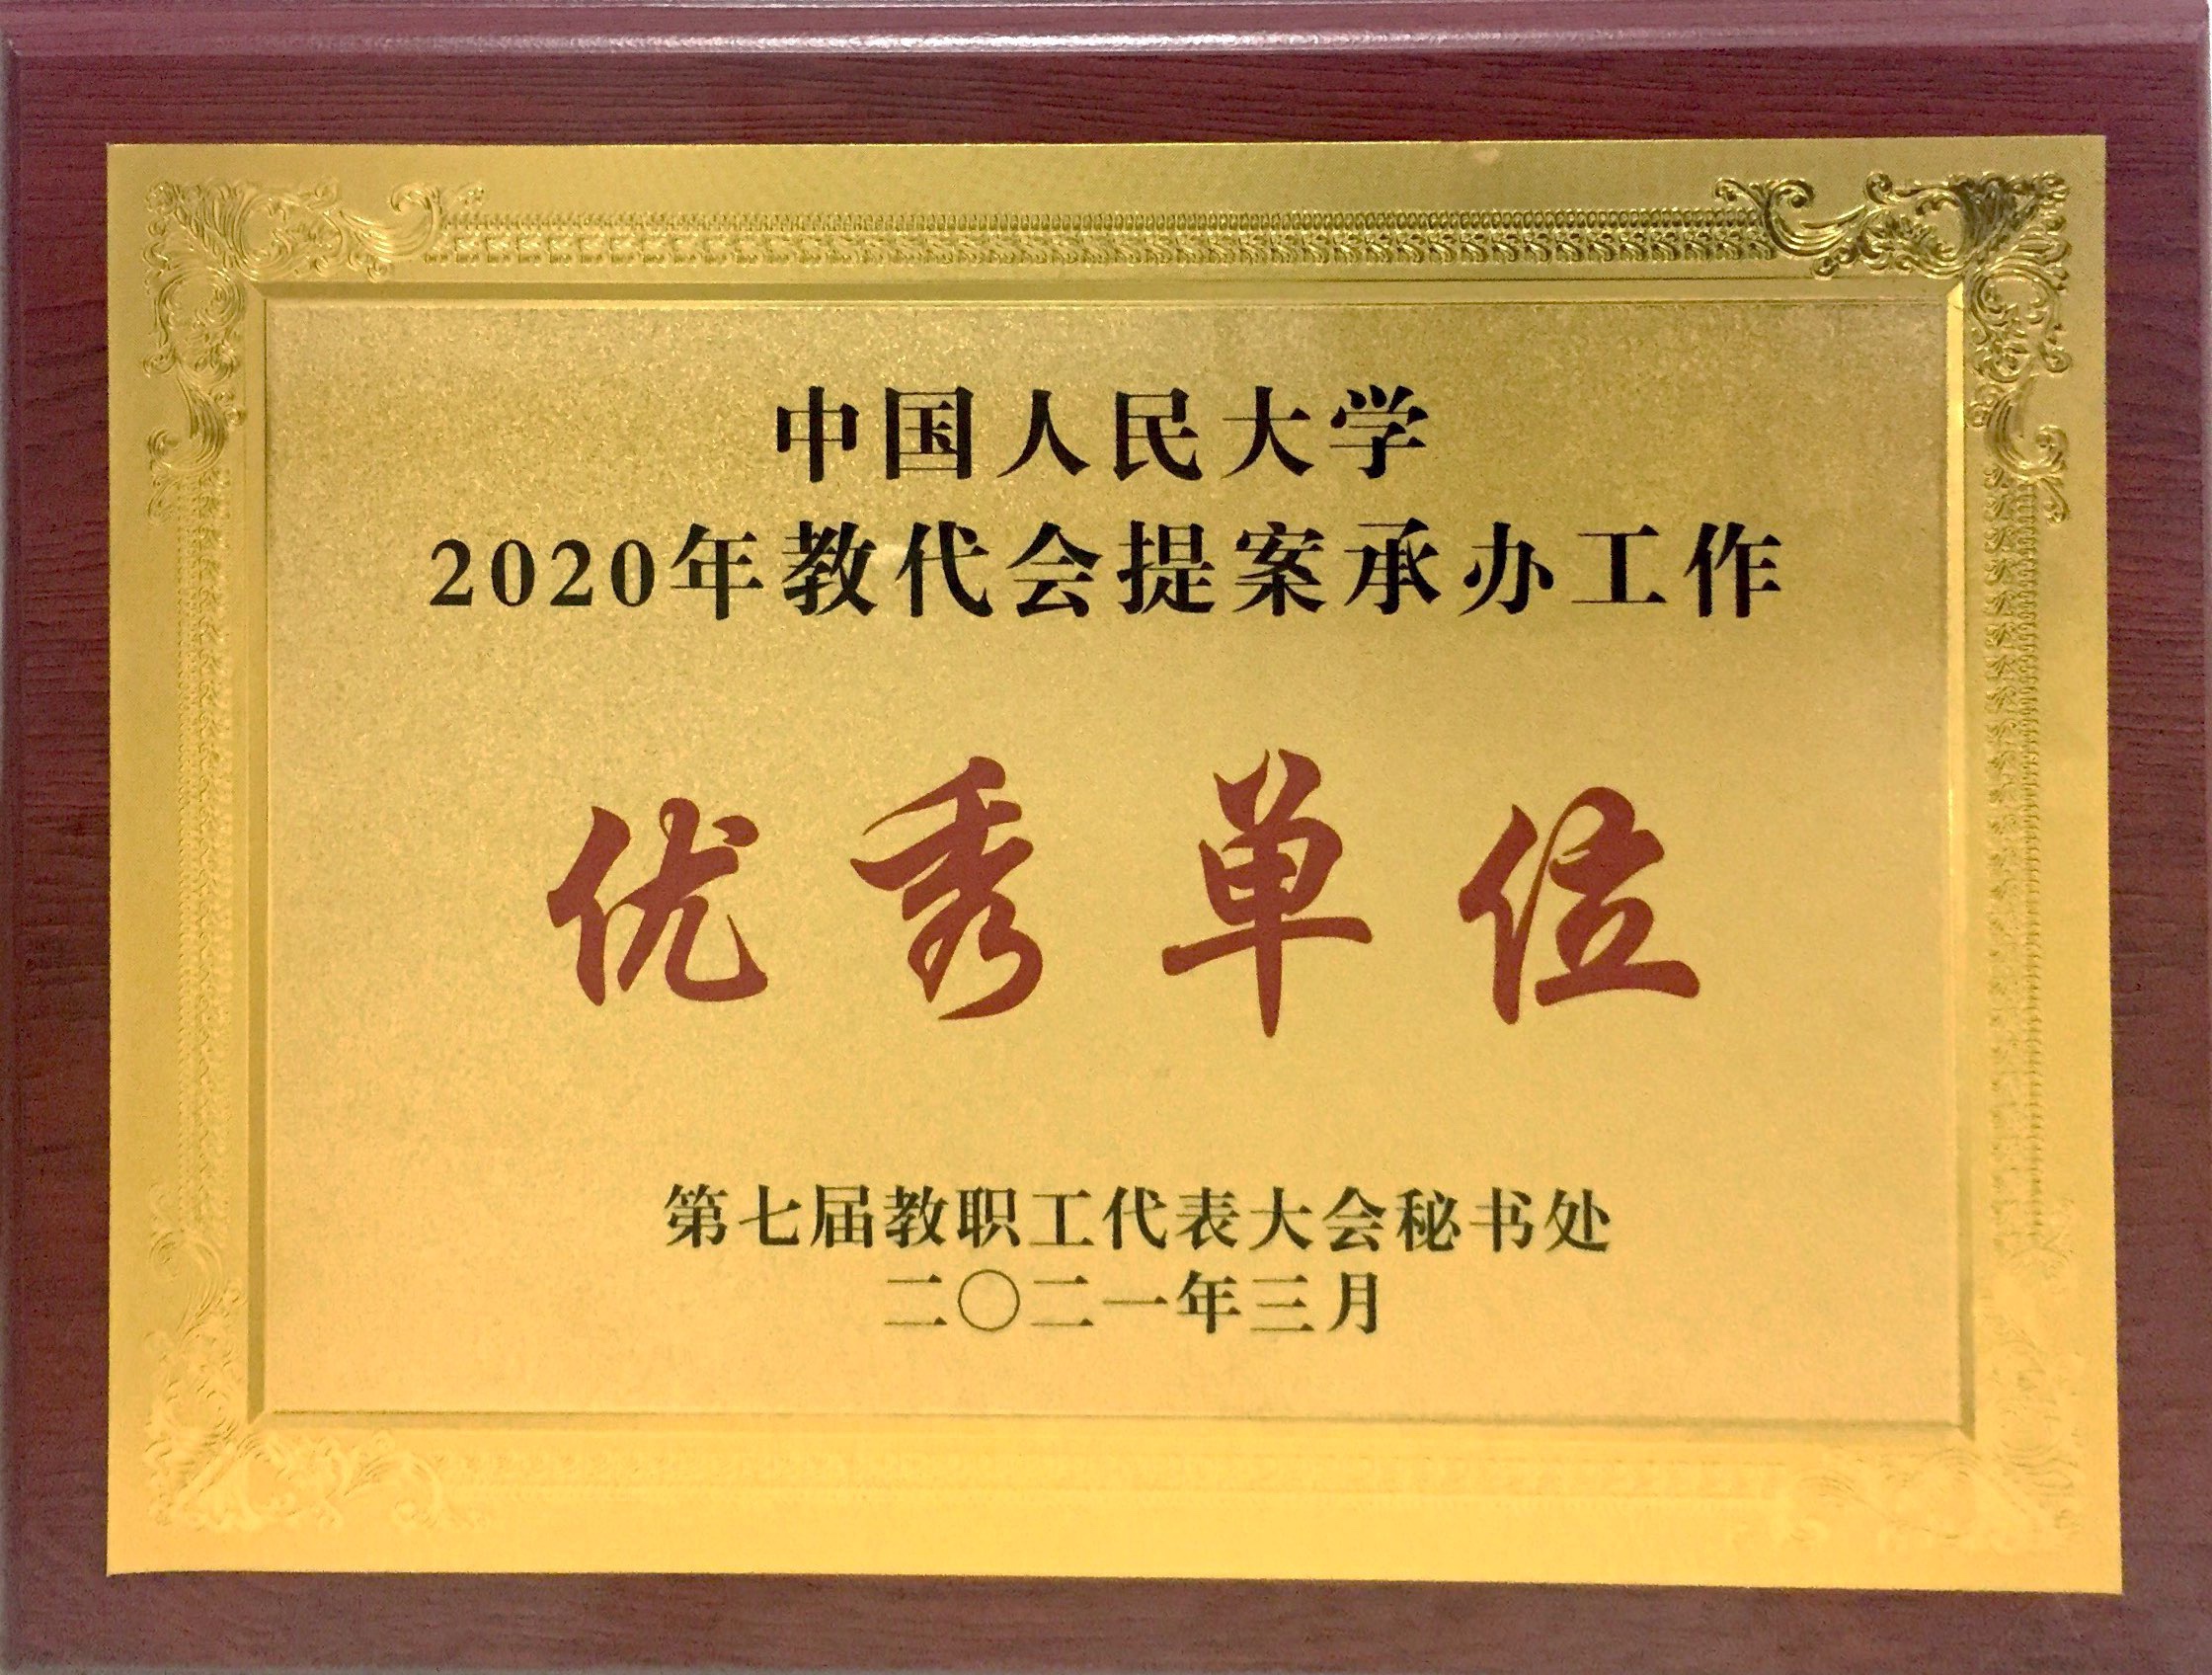             后勤集团被评为“中国人民大学2020年教代会提案承办工作优秀单位” 
    .jpg